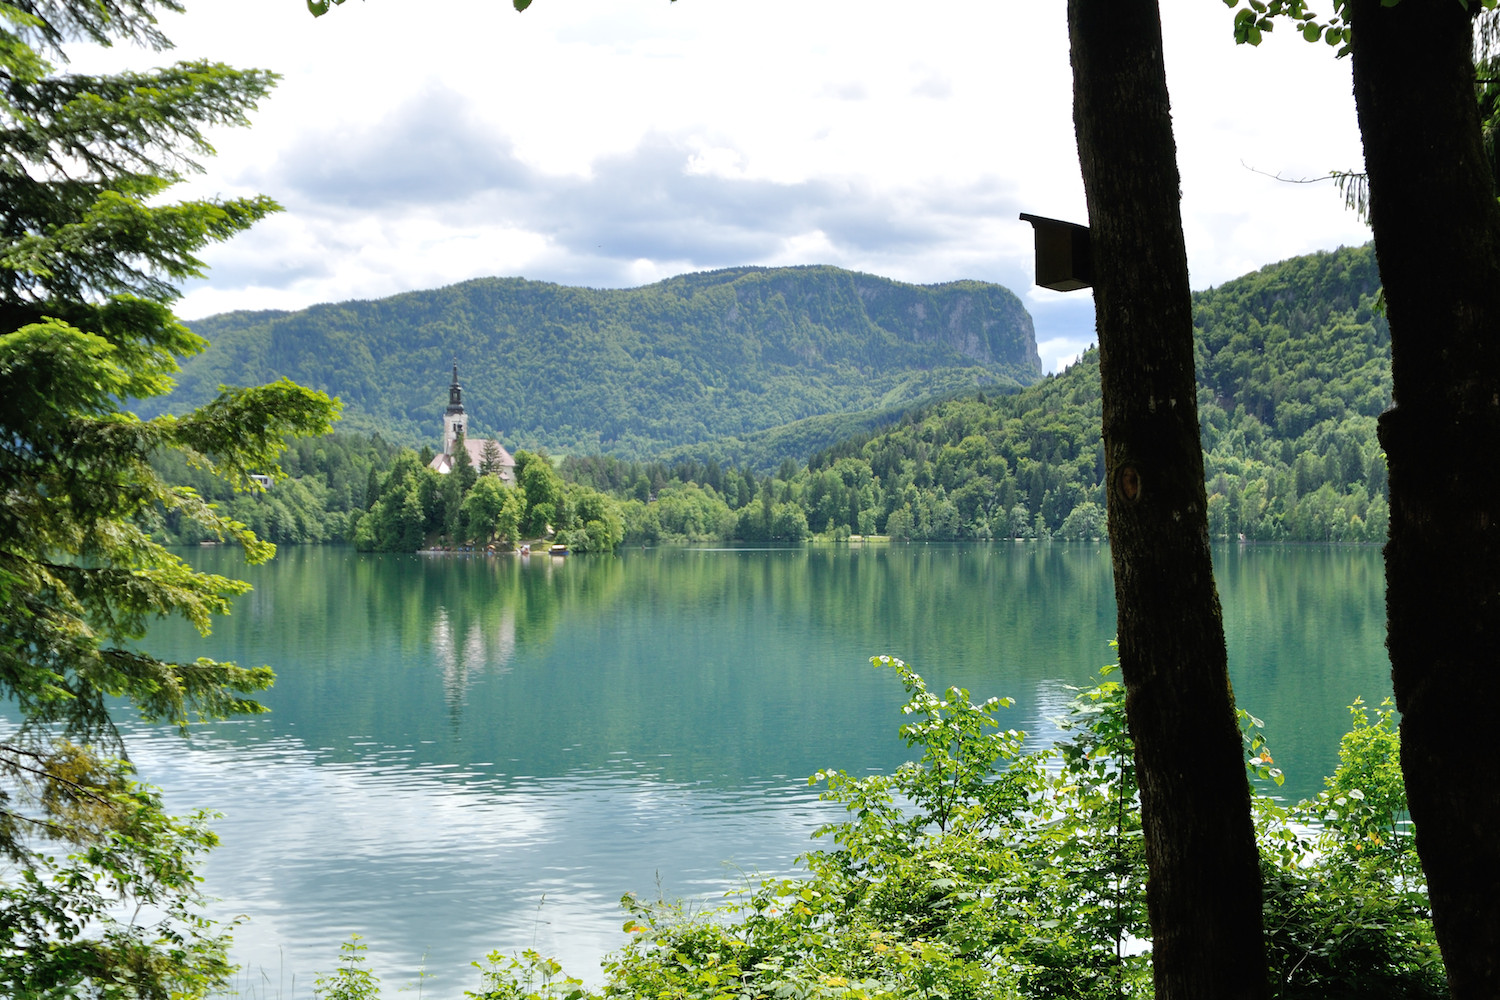 ヨーロッパ周遊の旅(5) 〜スロヴェニア・ブレッド湖、空港からフィンランドへ